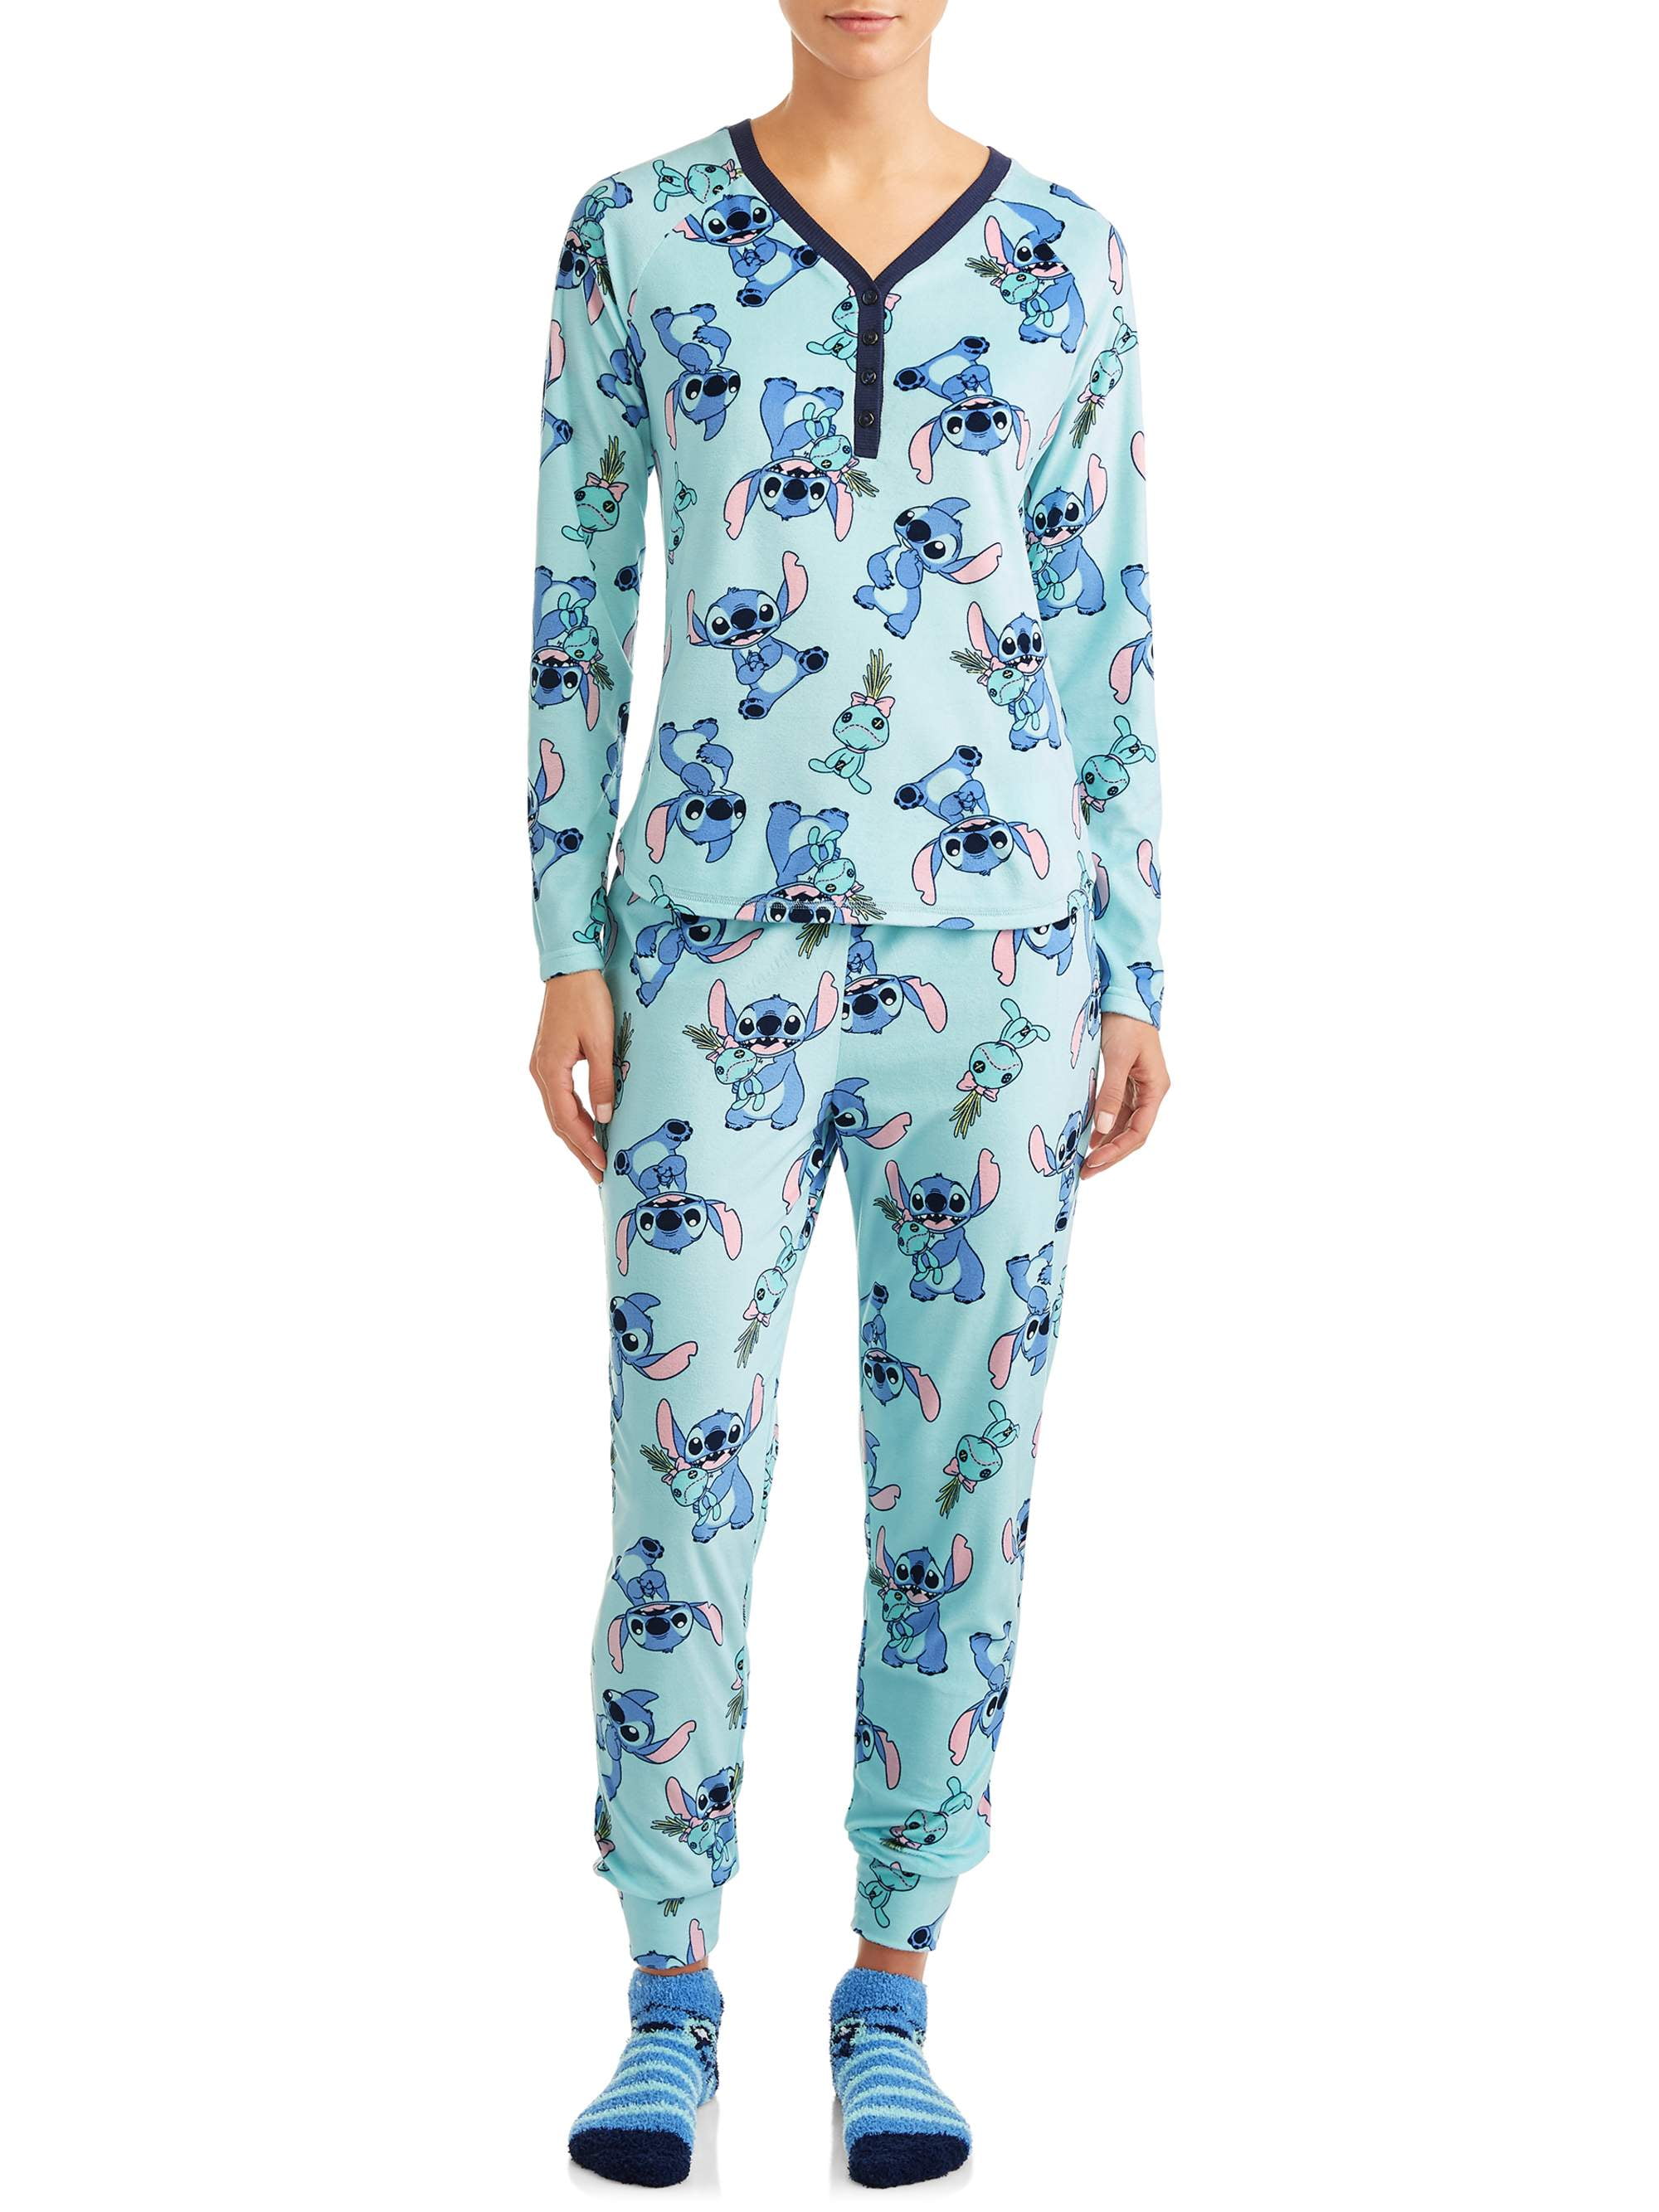 Snuggle Fleece Plaid Pajamas - Aqua